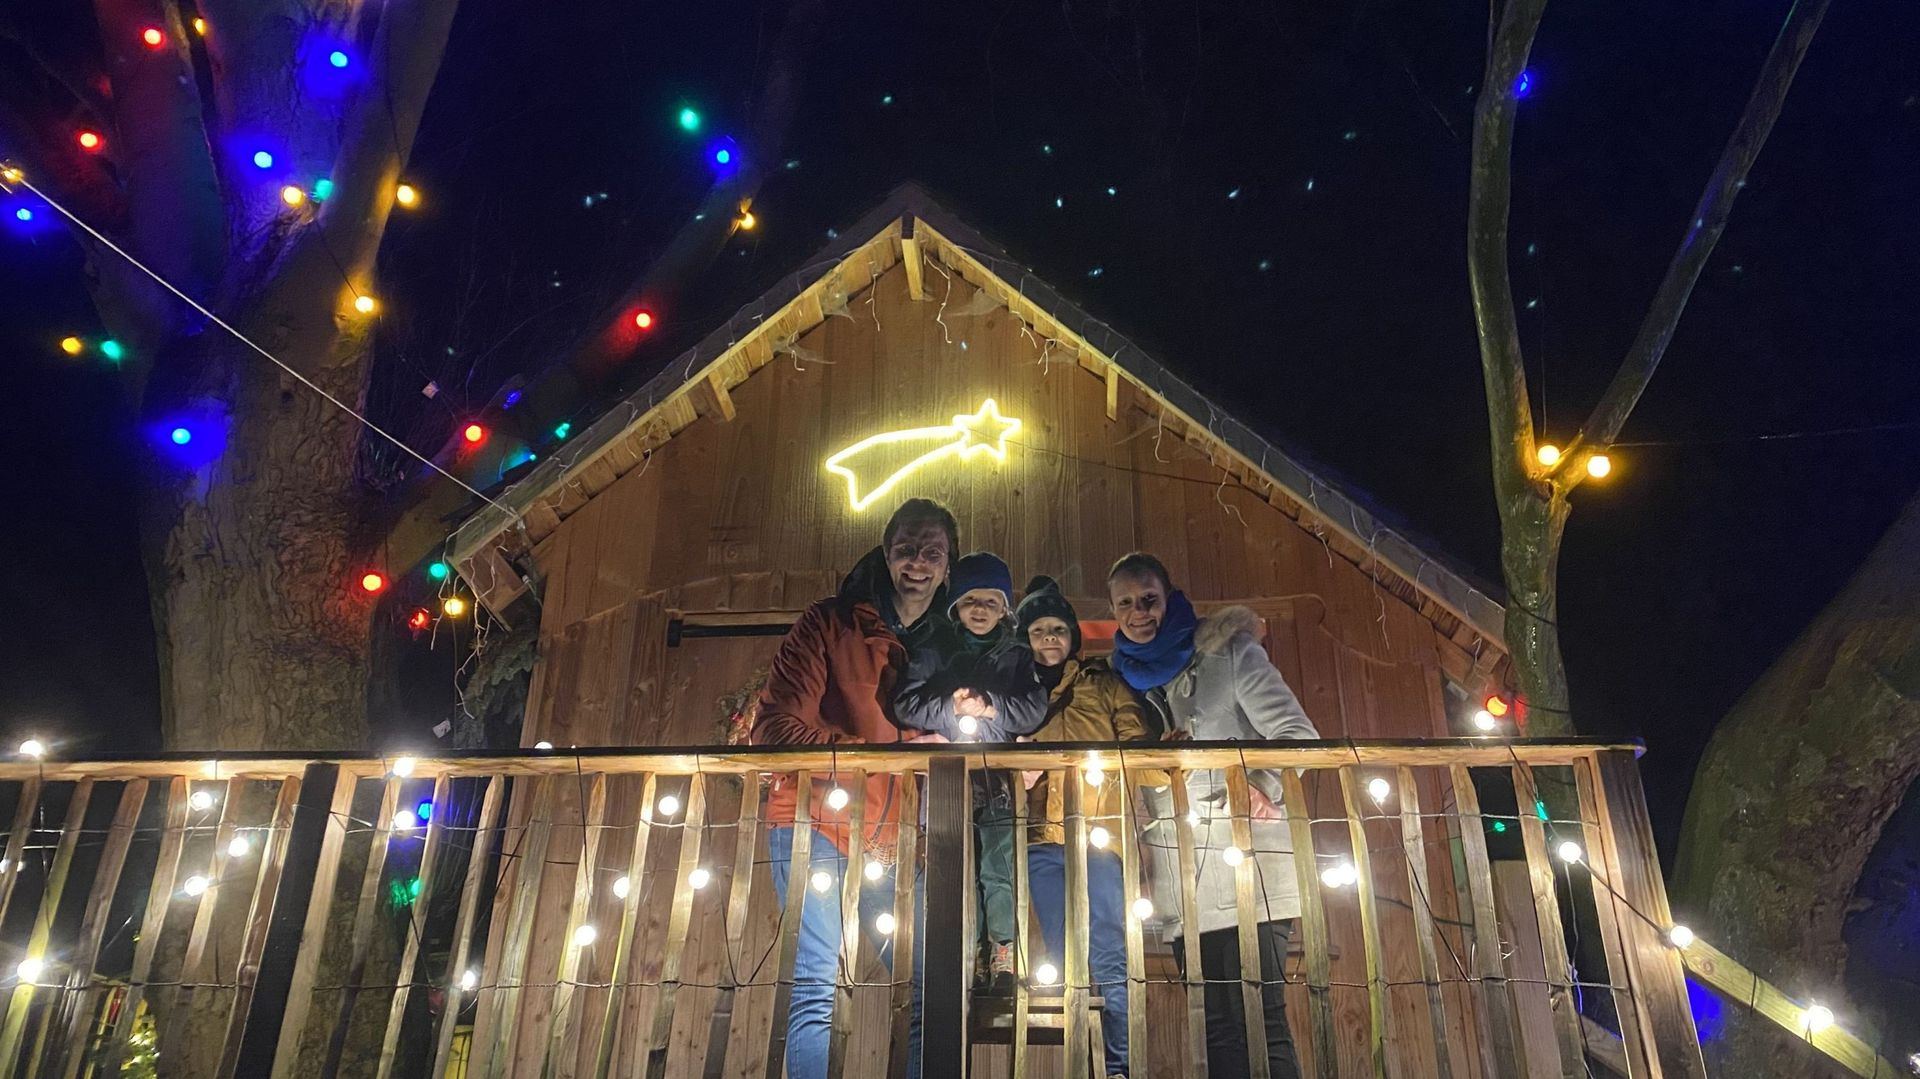 La famille Bury devant le chalet du Père Noël : première étape du parcours d’illuminations créé dans leur jardin